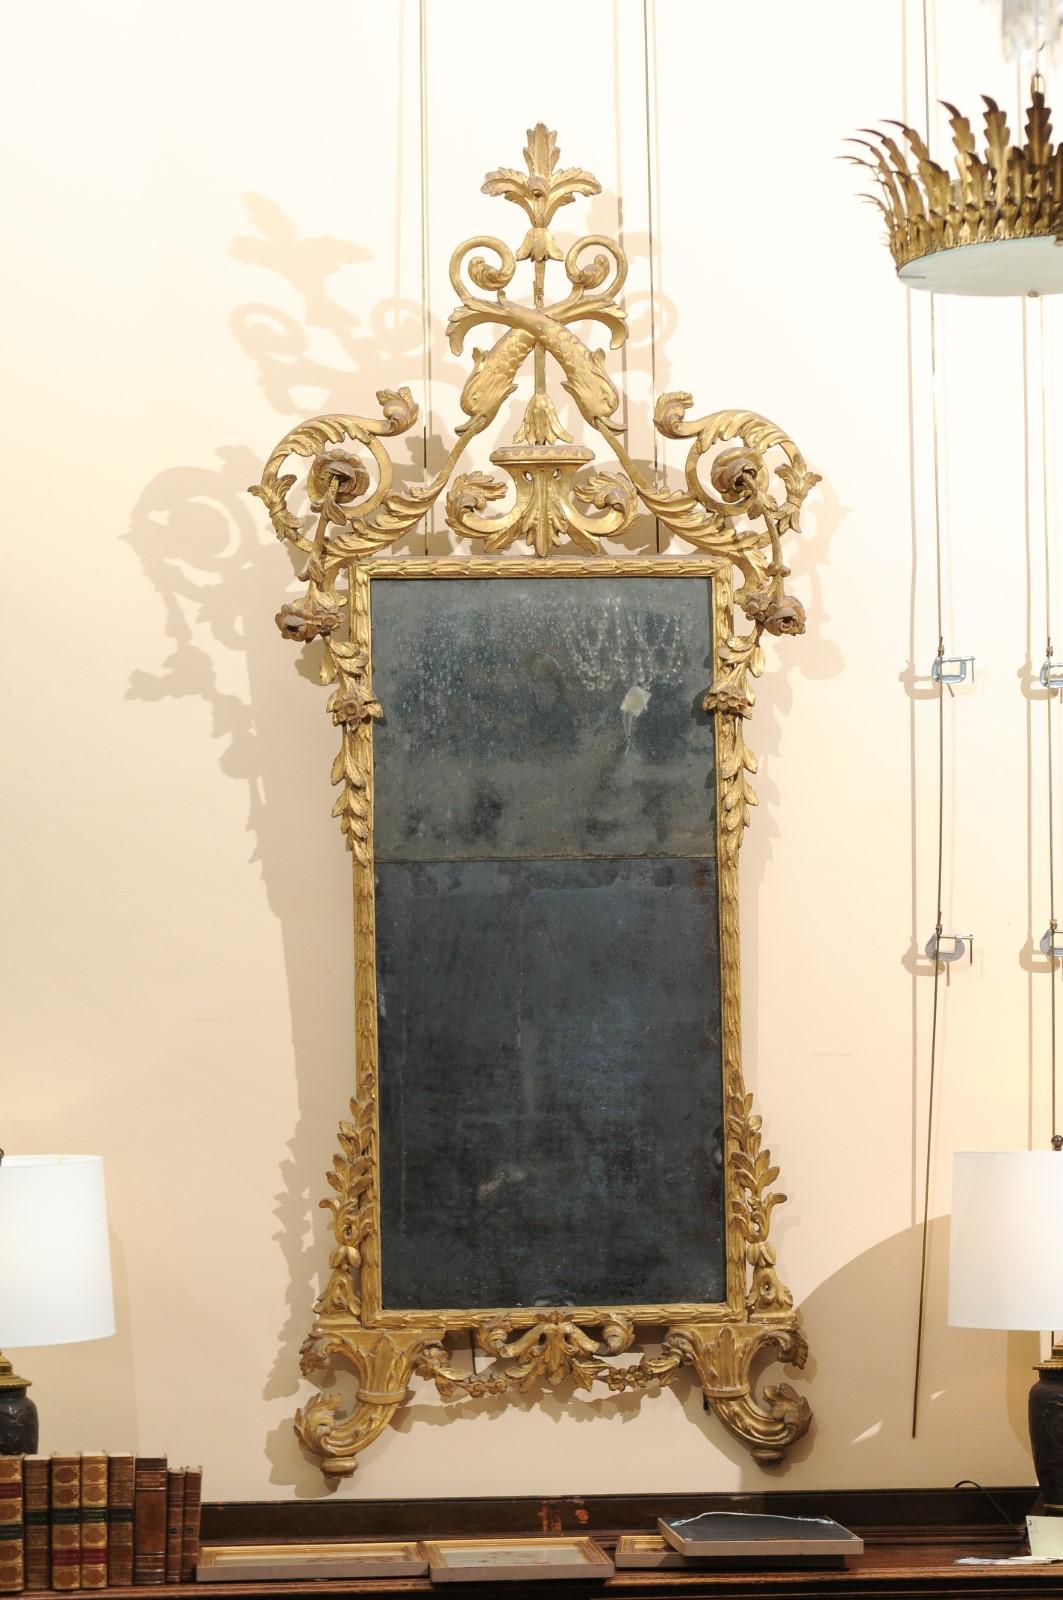 Miroir néoclassique italien de la fin du XVIIIe siècle en bois doré avec crête sculptée de dauphins, feuilles d'acanthe et roses. Le miroir avec la plaque originale de 2 pièces.